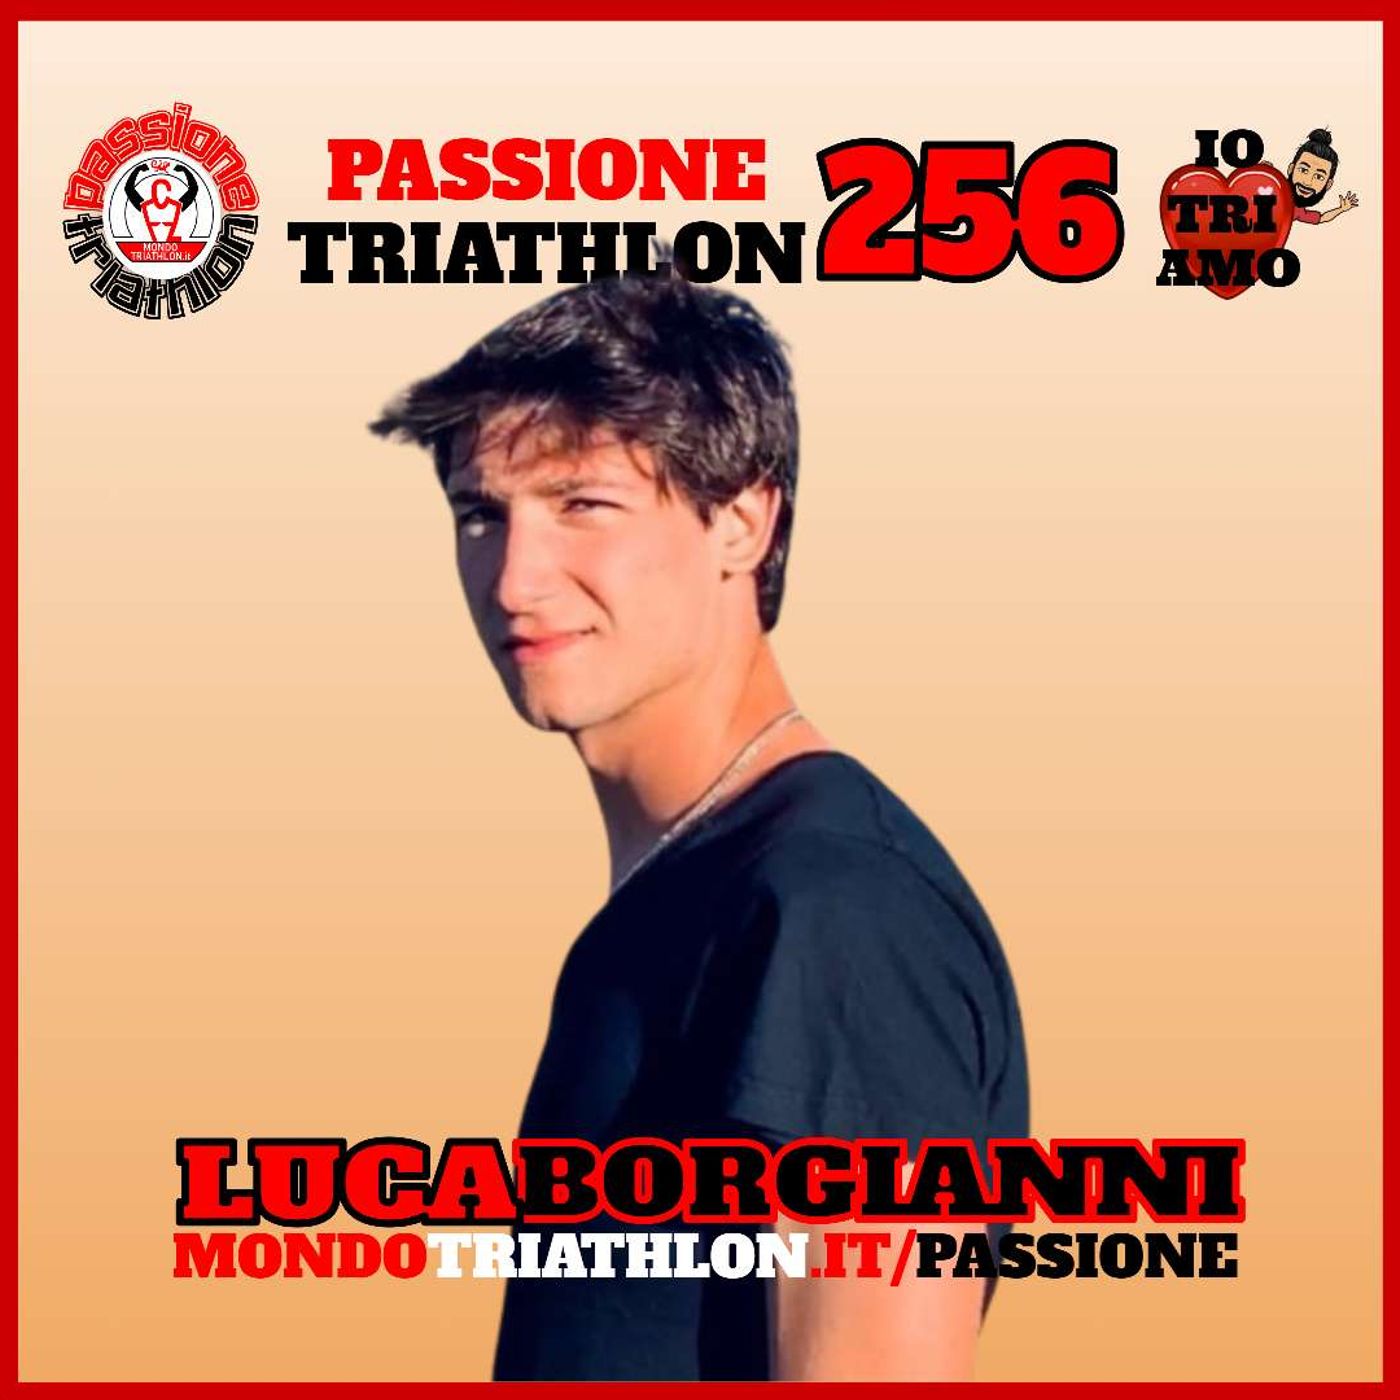 Passione Triathlon n° 256 🏊🚴🏃💗 Luca Borgianni